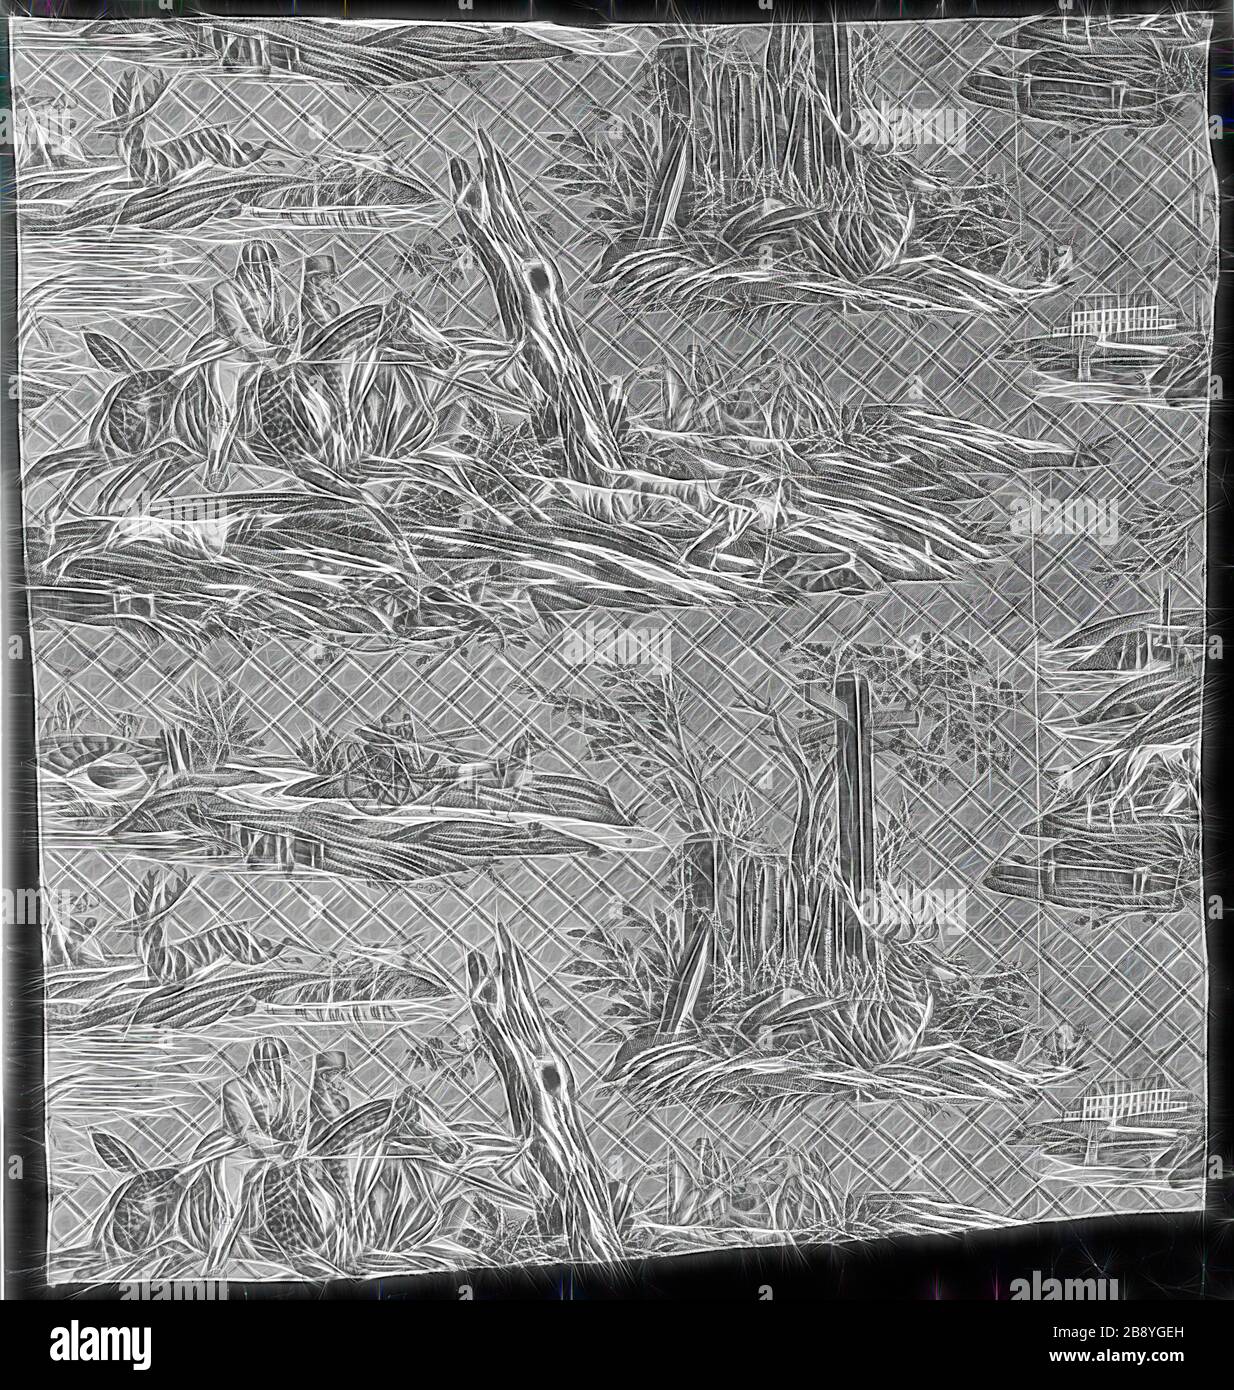 La Route de Jouy (The Road to Jouy), 1815, progettato da Horace Vernet (francese, 1789–1863), prodotto da Oberkampf Manufactory (francese, 1738–1815), Francia, Jouy-en-Josas, Francia, cotone, tessitura piana, rame stampato, 75,1 × 71 cm (29 1/2 × 28 in.), immaginato da Rebon design di calore allegro di luminosità e raggi di luce radianza. Arte classica reinventata con un tocco moderno. La fotografia ispirata al futurismo, che abbraccia l'energia dinamica della tecnologia moderna, del movimento, della velocità e rivoluziona la cultura. Foto Stock